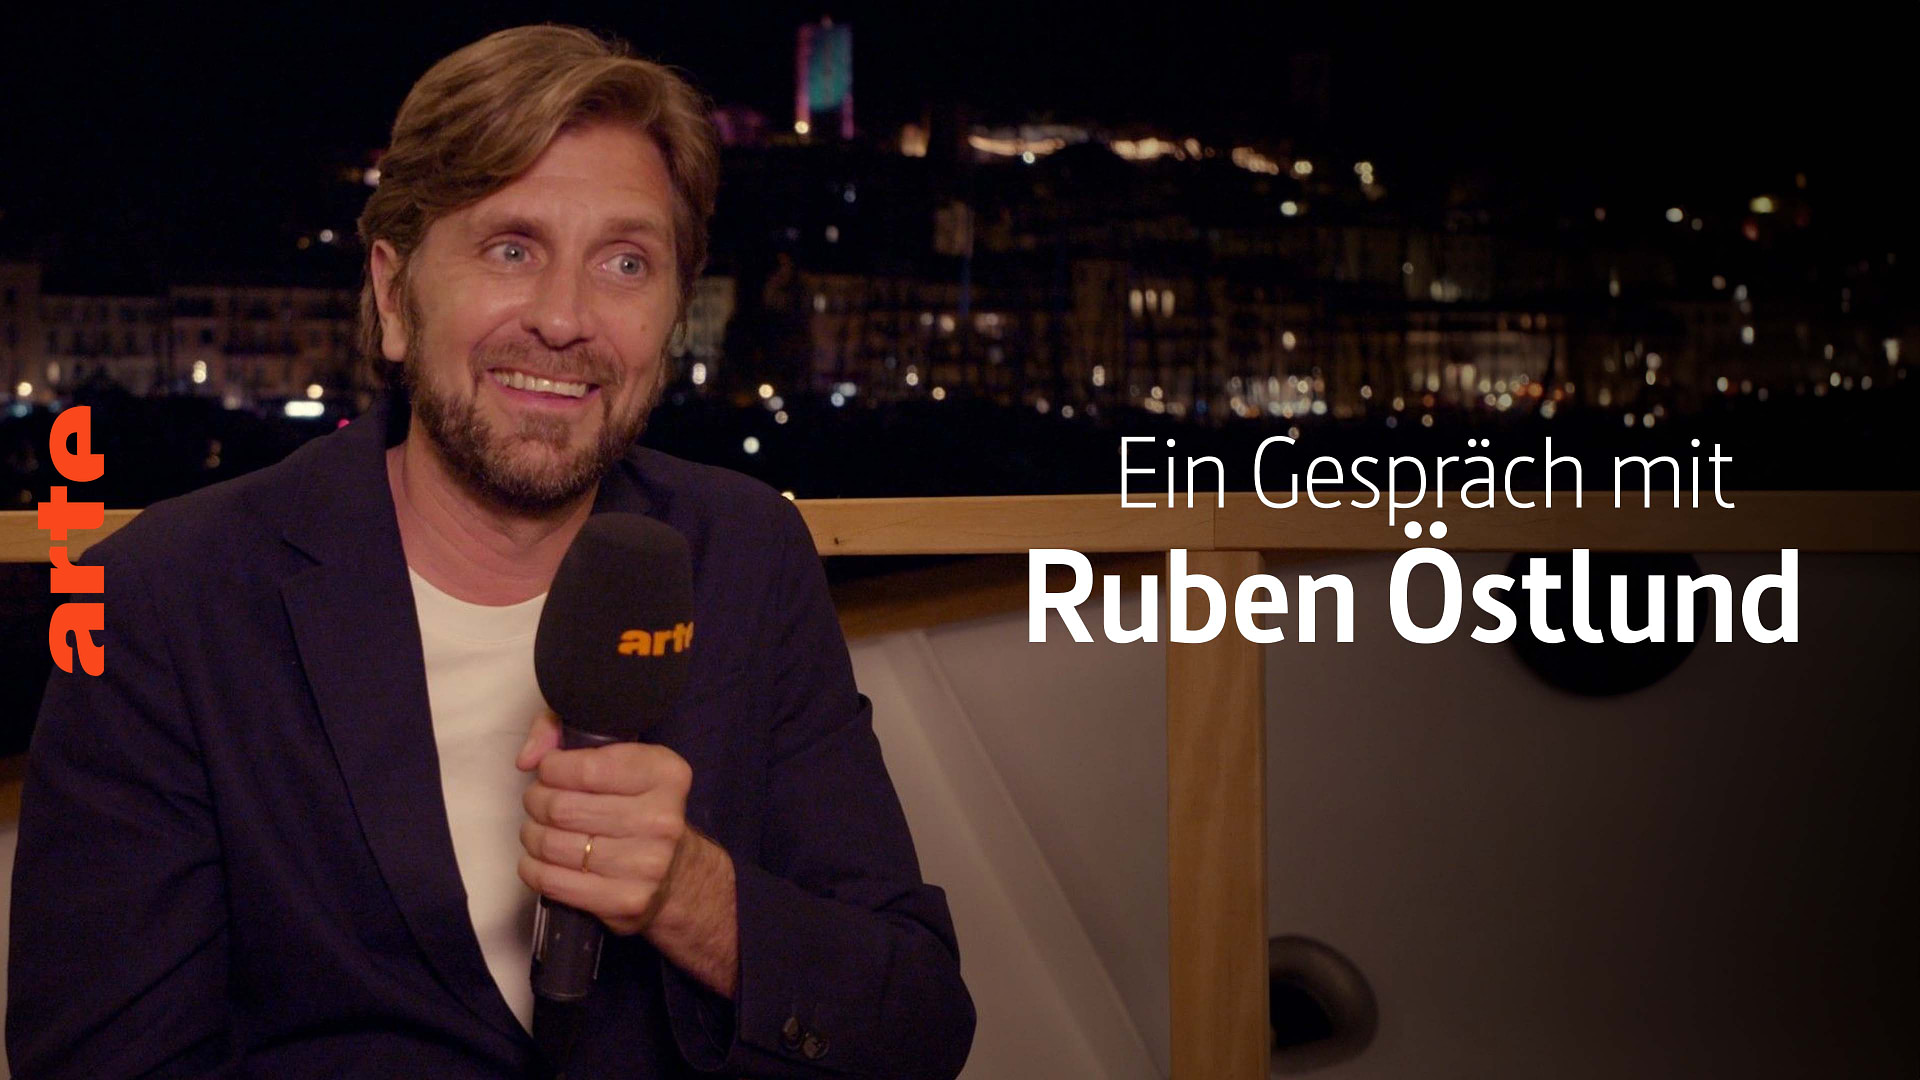 Ein Gespräch mit... Ruben Östlund